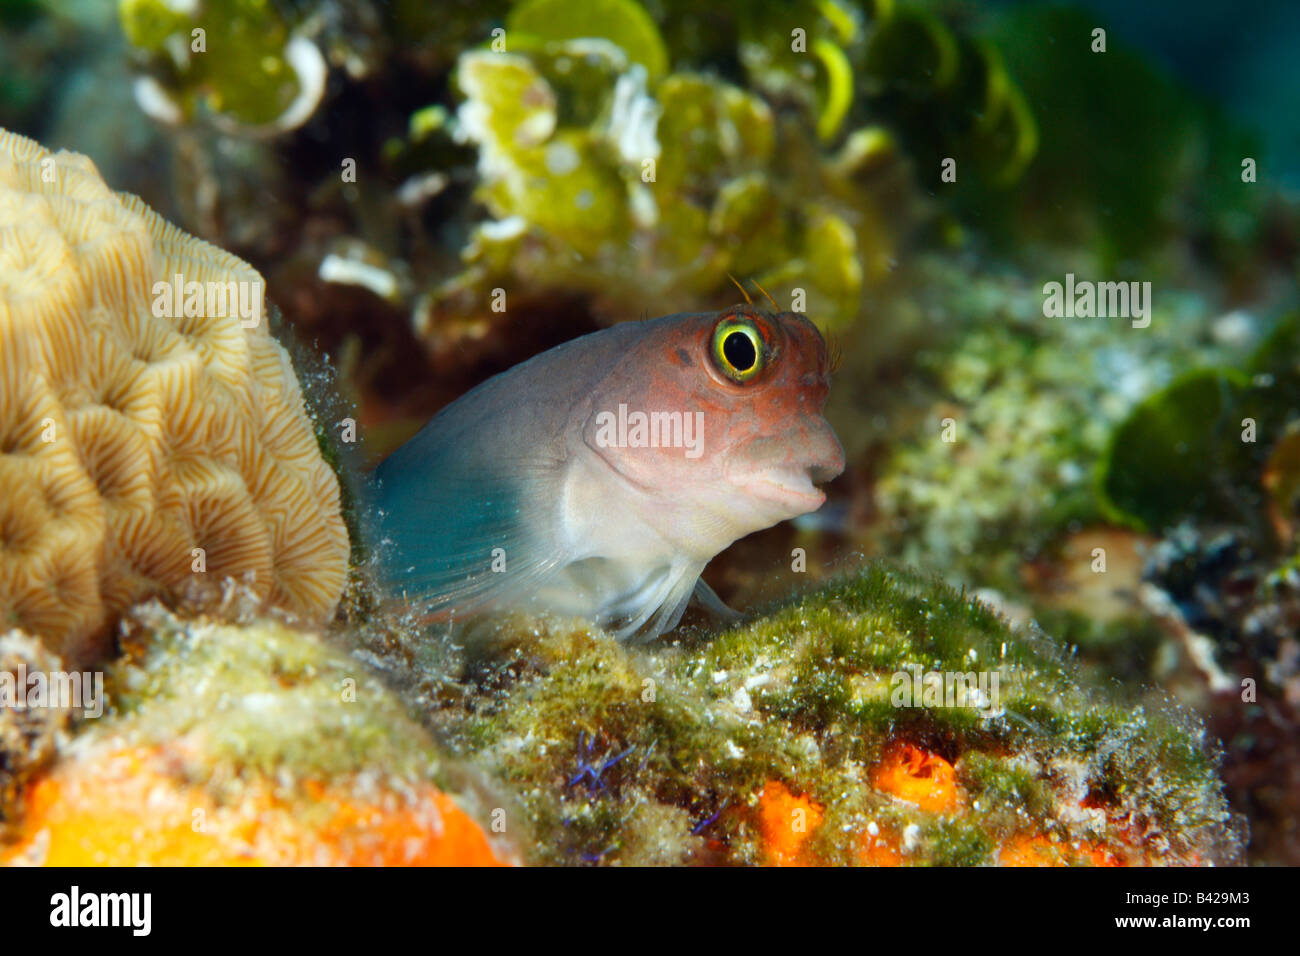 Eine Nahaufnahme Makro Kopf Bildniss Redlip Blenny spähte aus bunten Korallen Fuchsbau mit Seetang, Schwämmen und Algen verkrustet Stockfoto